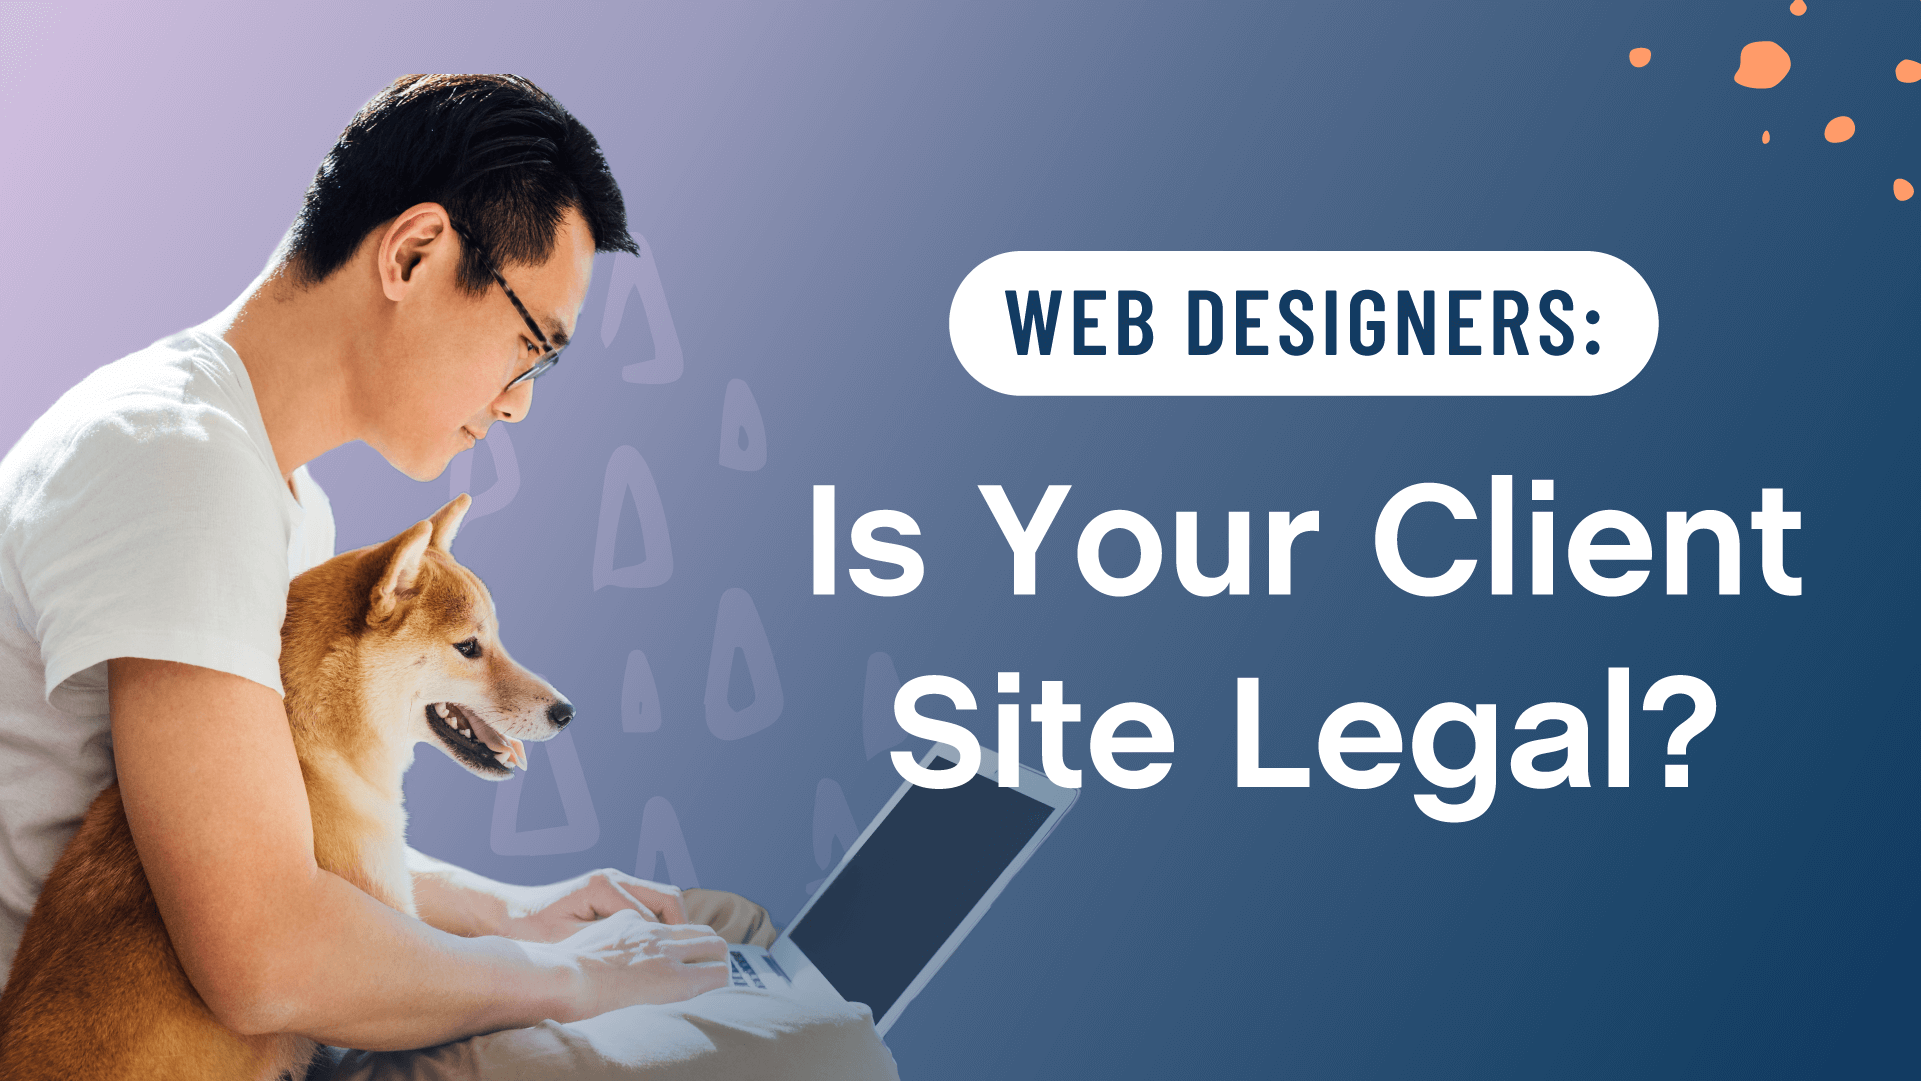 Web Designers: Is Your Client Site Legal?